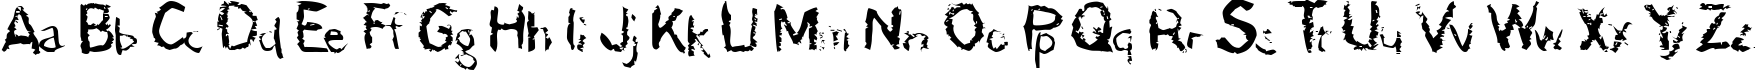 Пример написания английского алфавита шрифтом der Dдmonschriftkegel